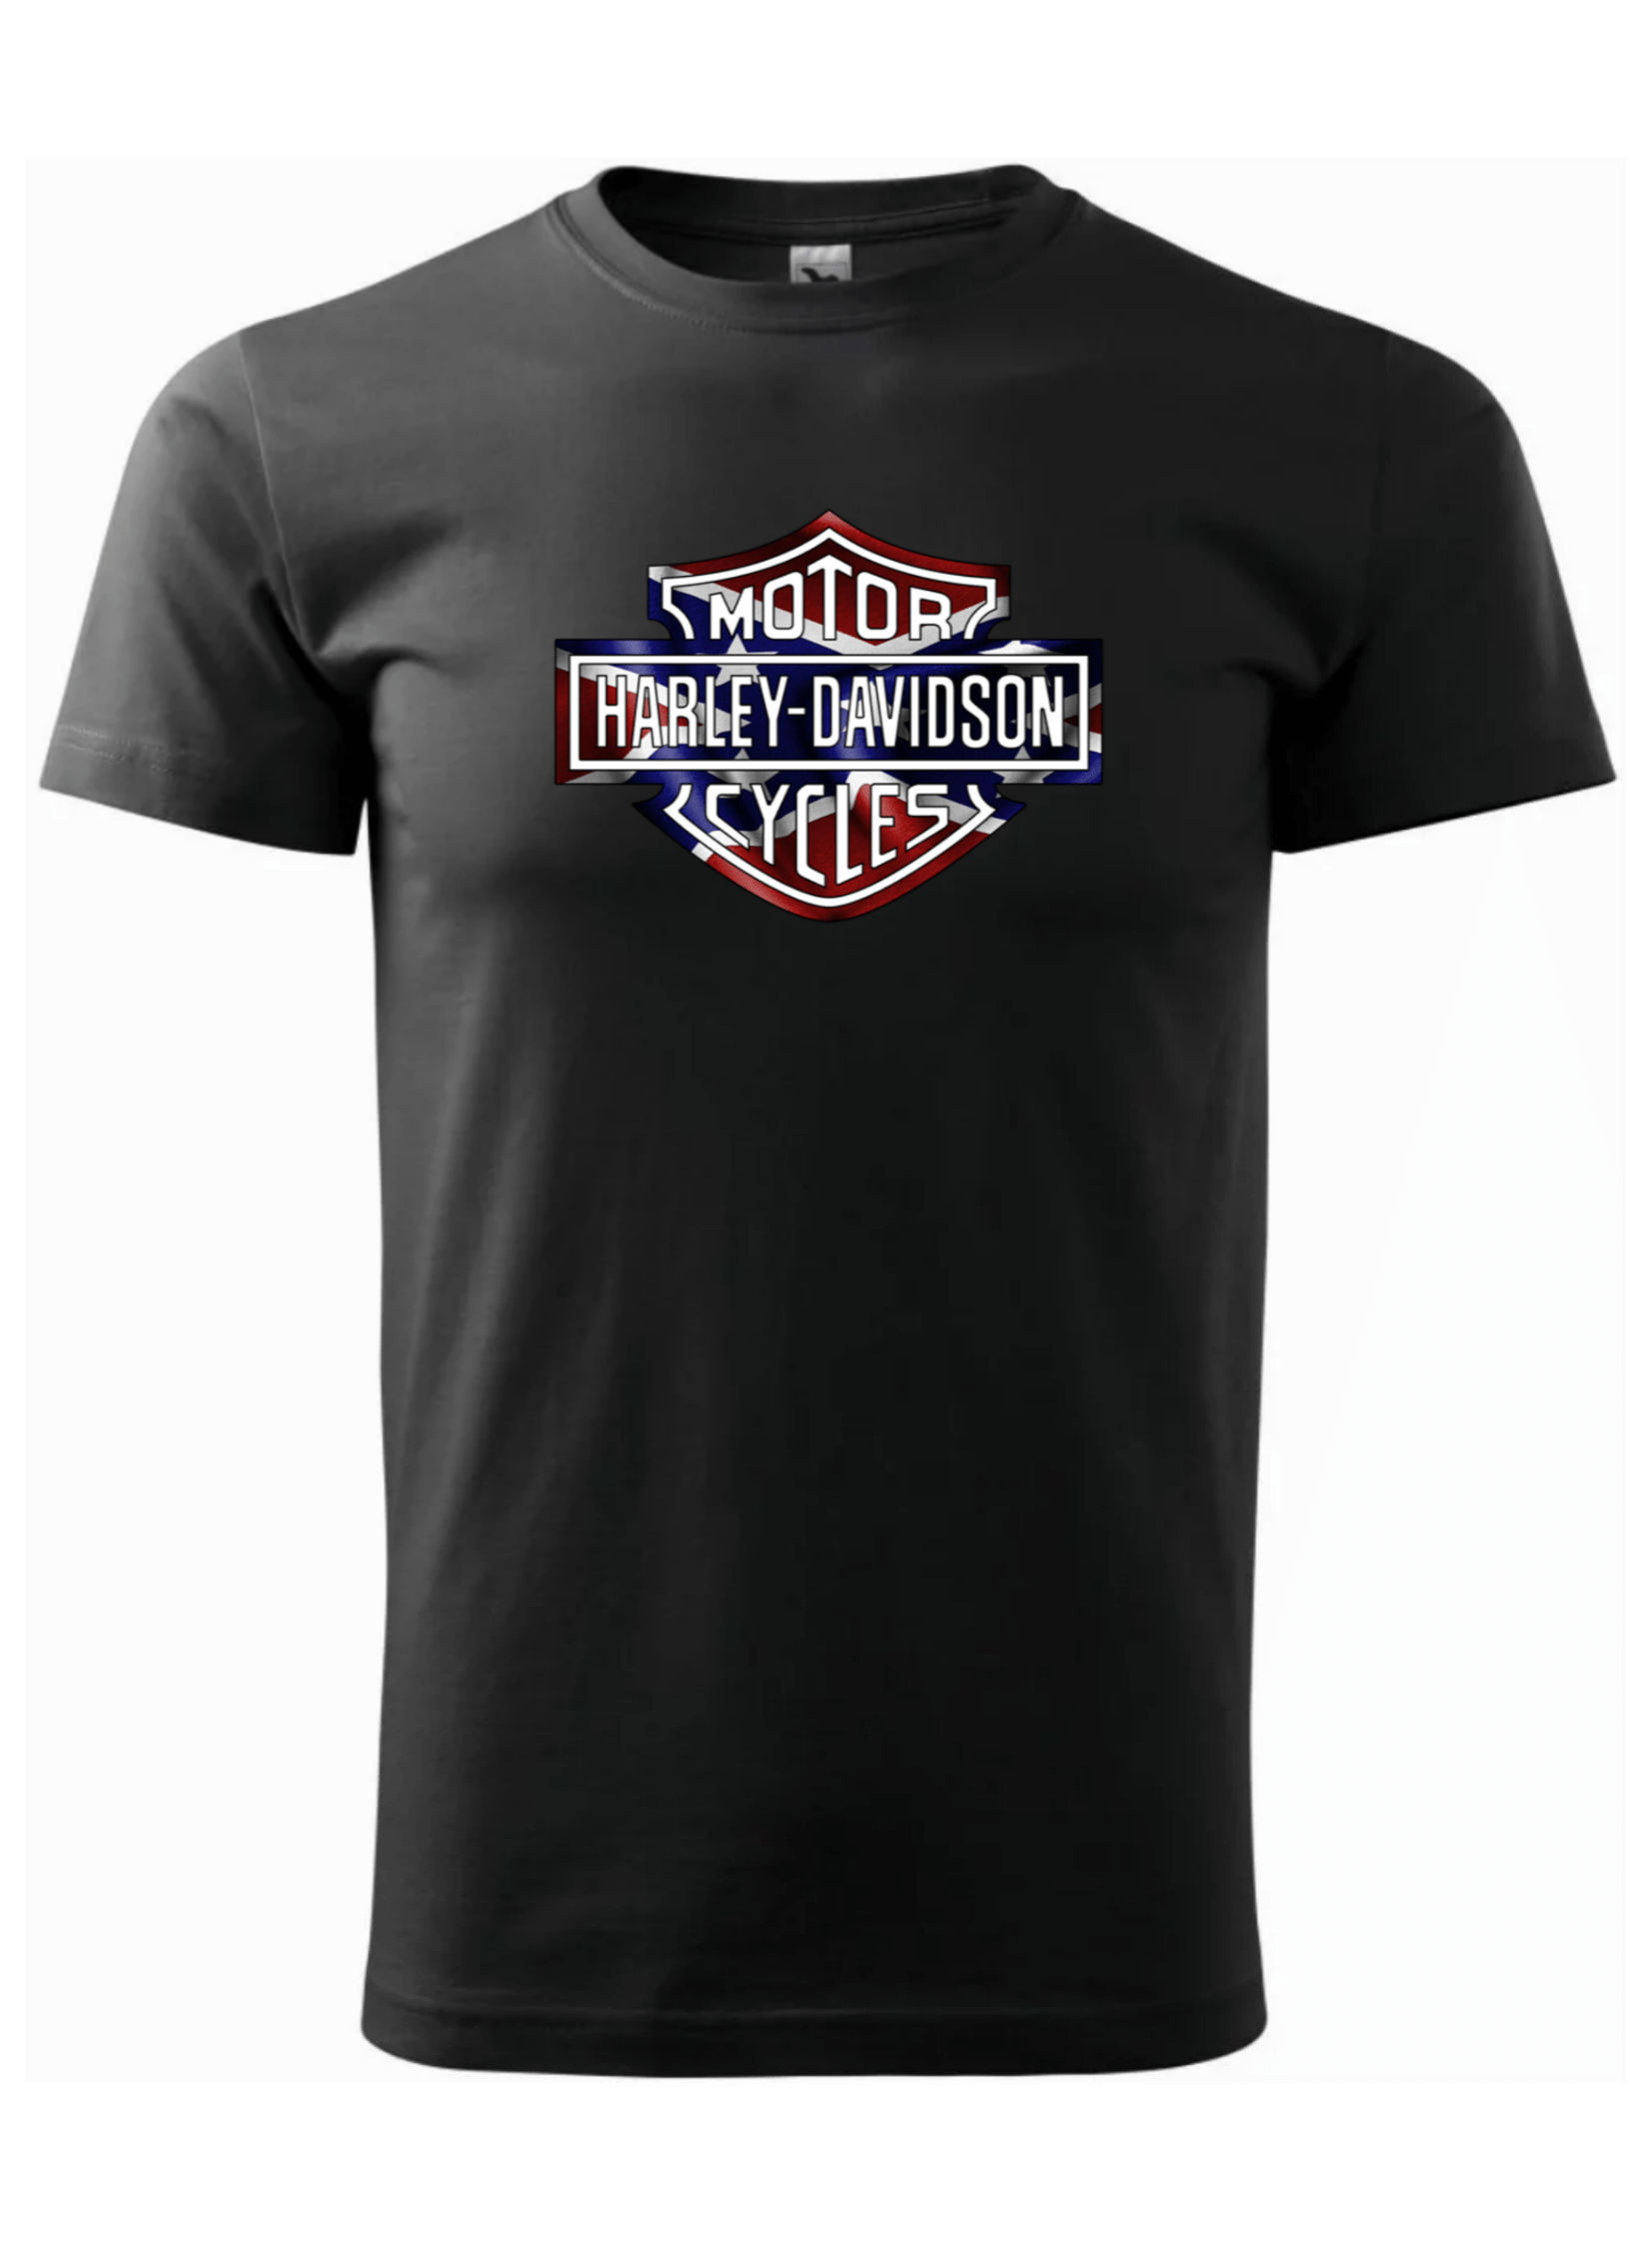 Pánské tričko s potiskem značky Harley Davidson 4